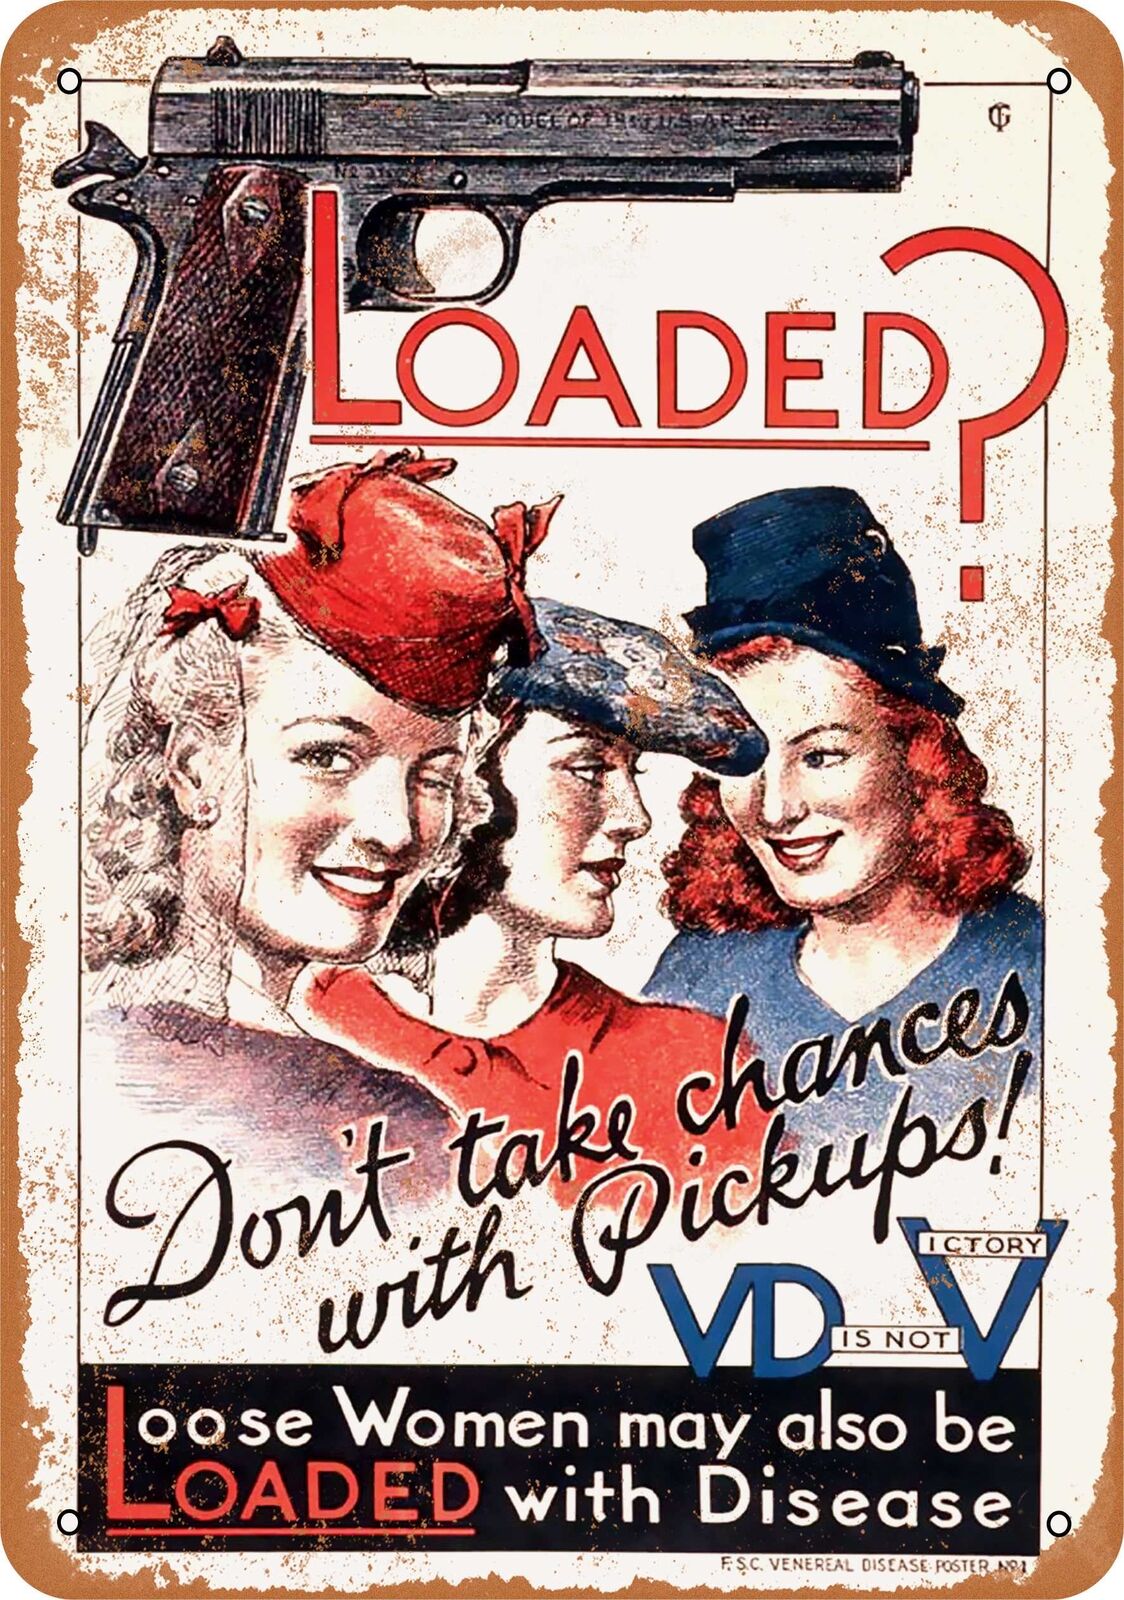 Metal Sign - 1942 Loose Women VD is like a Loaded Gun - Vintage Look Re